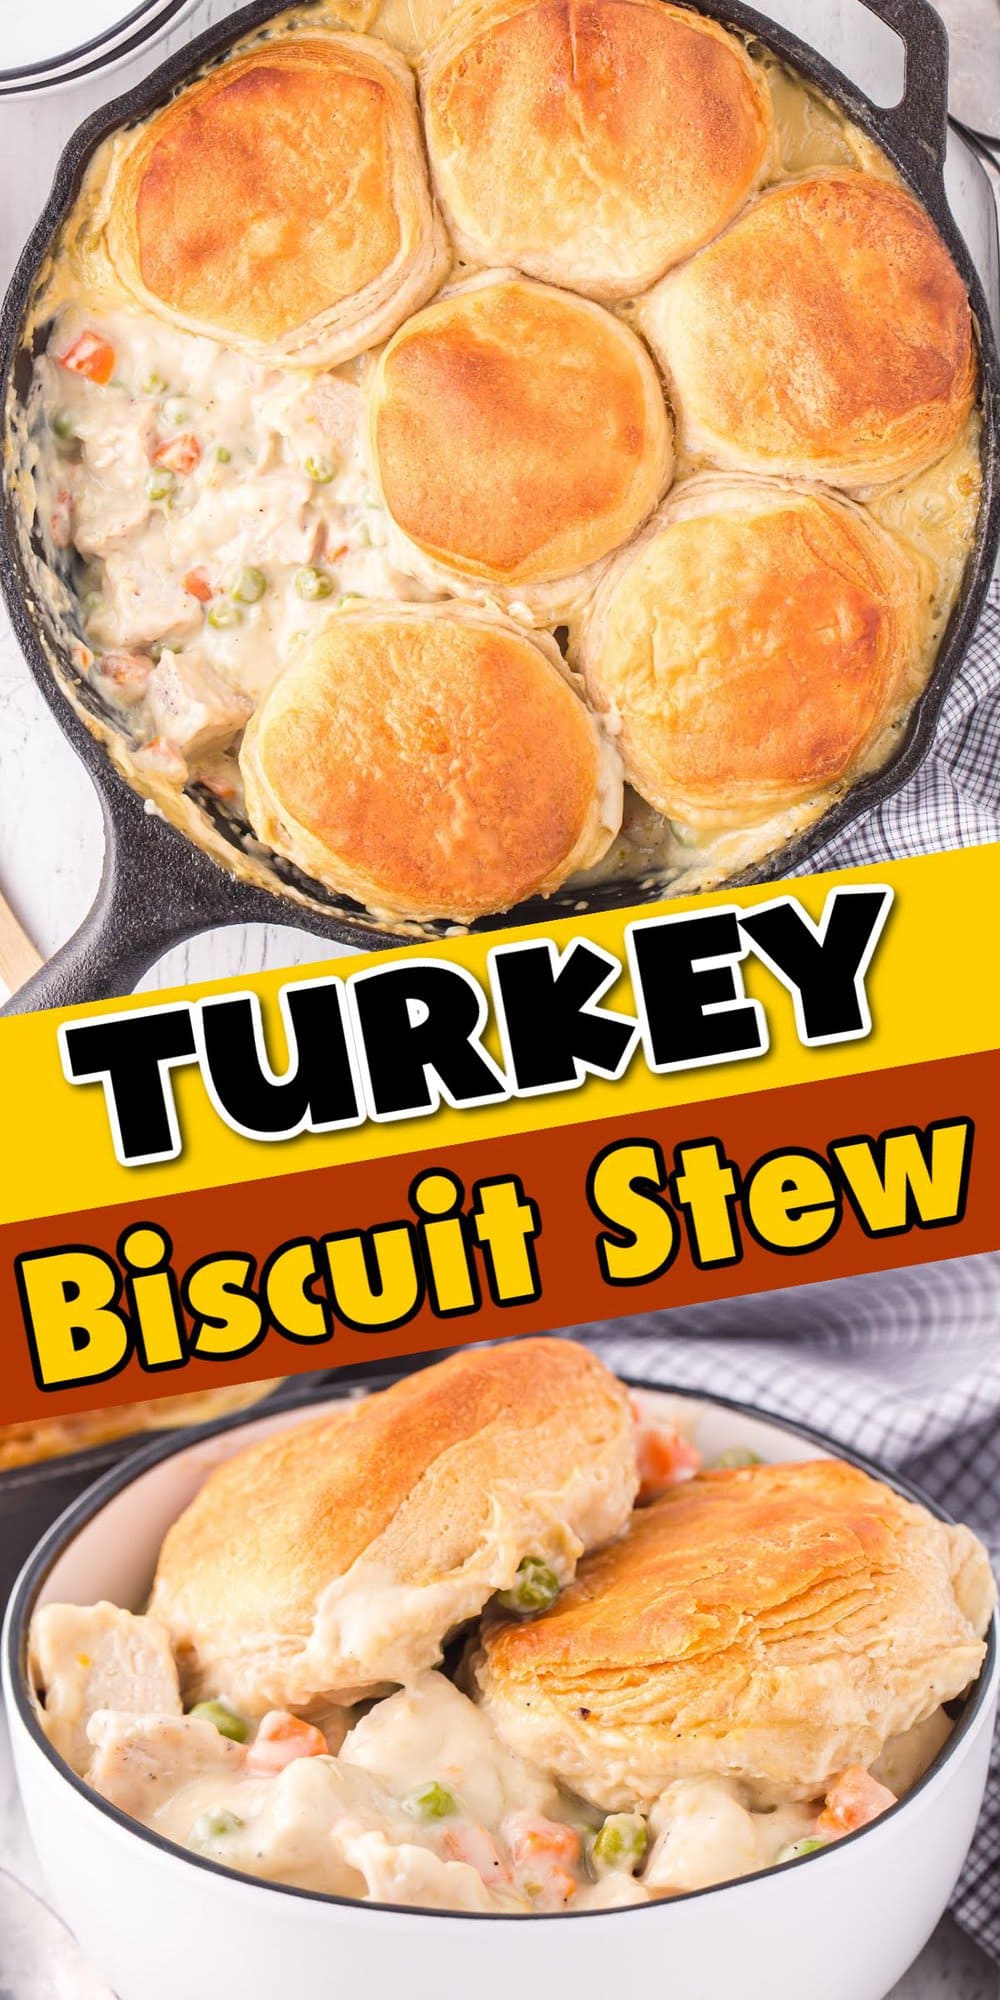 Turkey Biscuit Stew pinterest